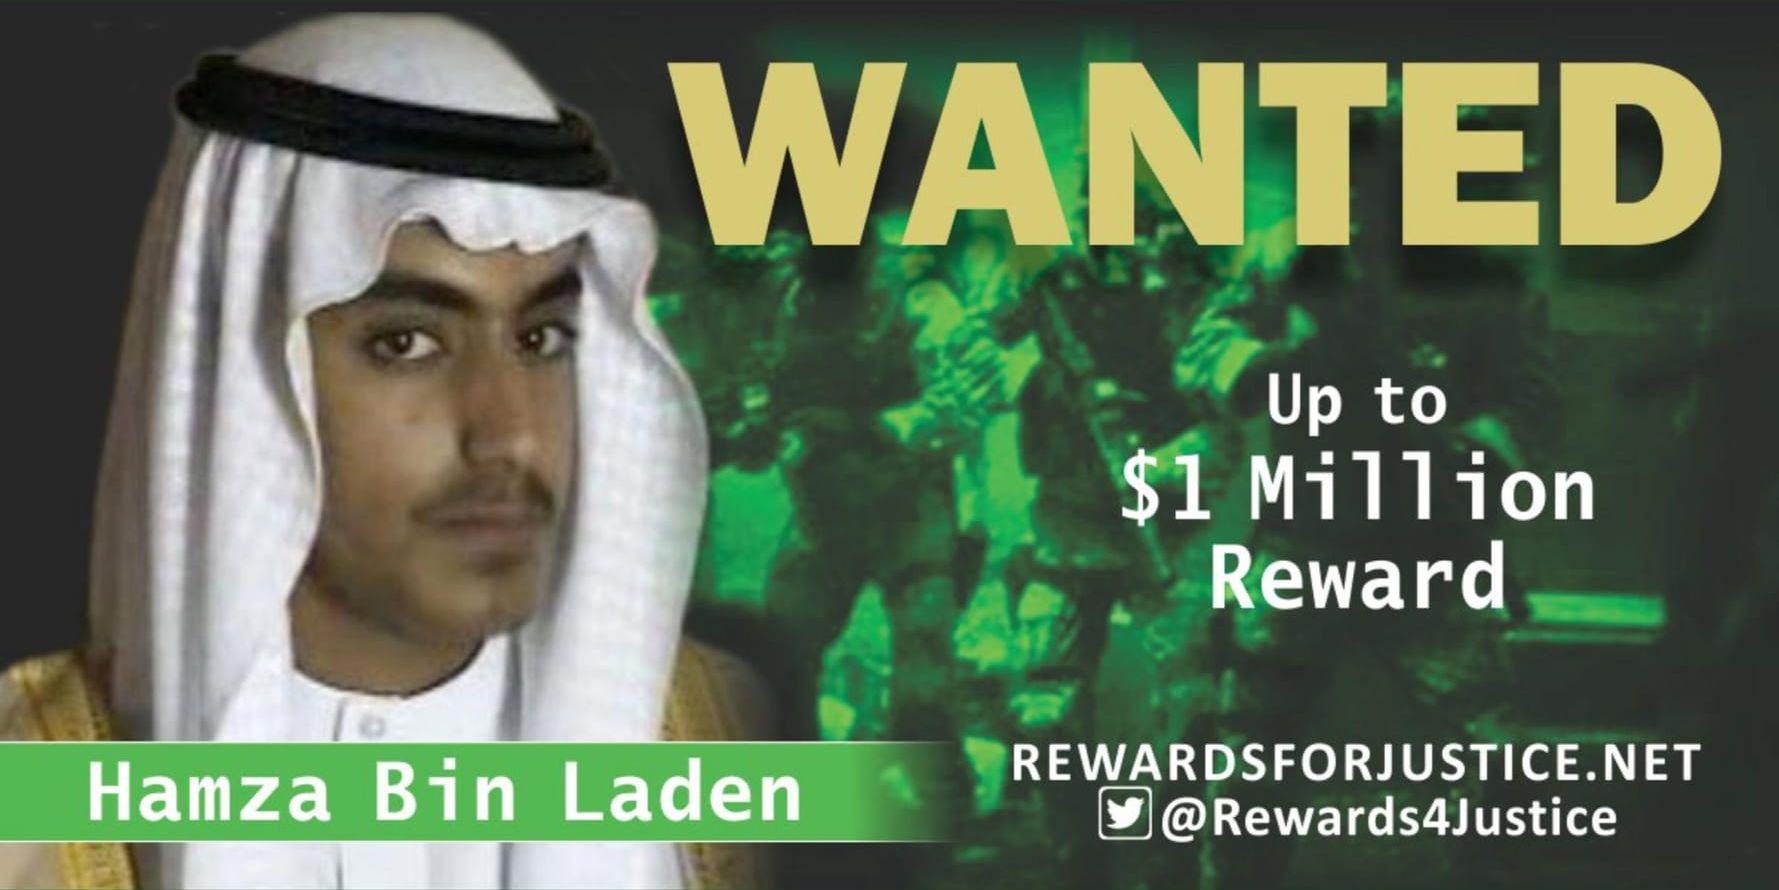 En amerikansk affisch där en belöning utlovas till den som hjälper till att få Hamza bin Ladin gripen.